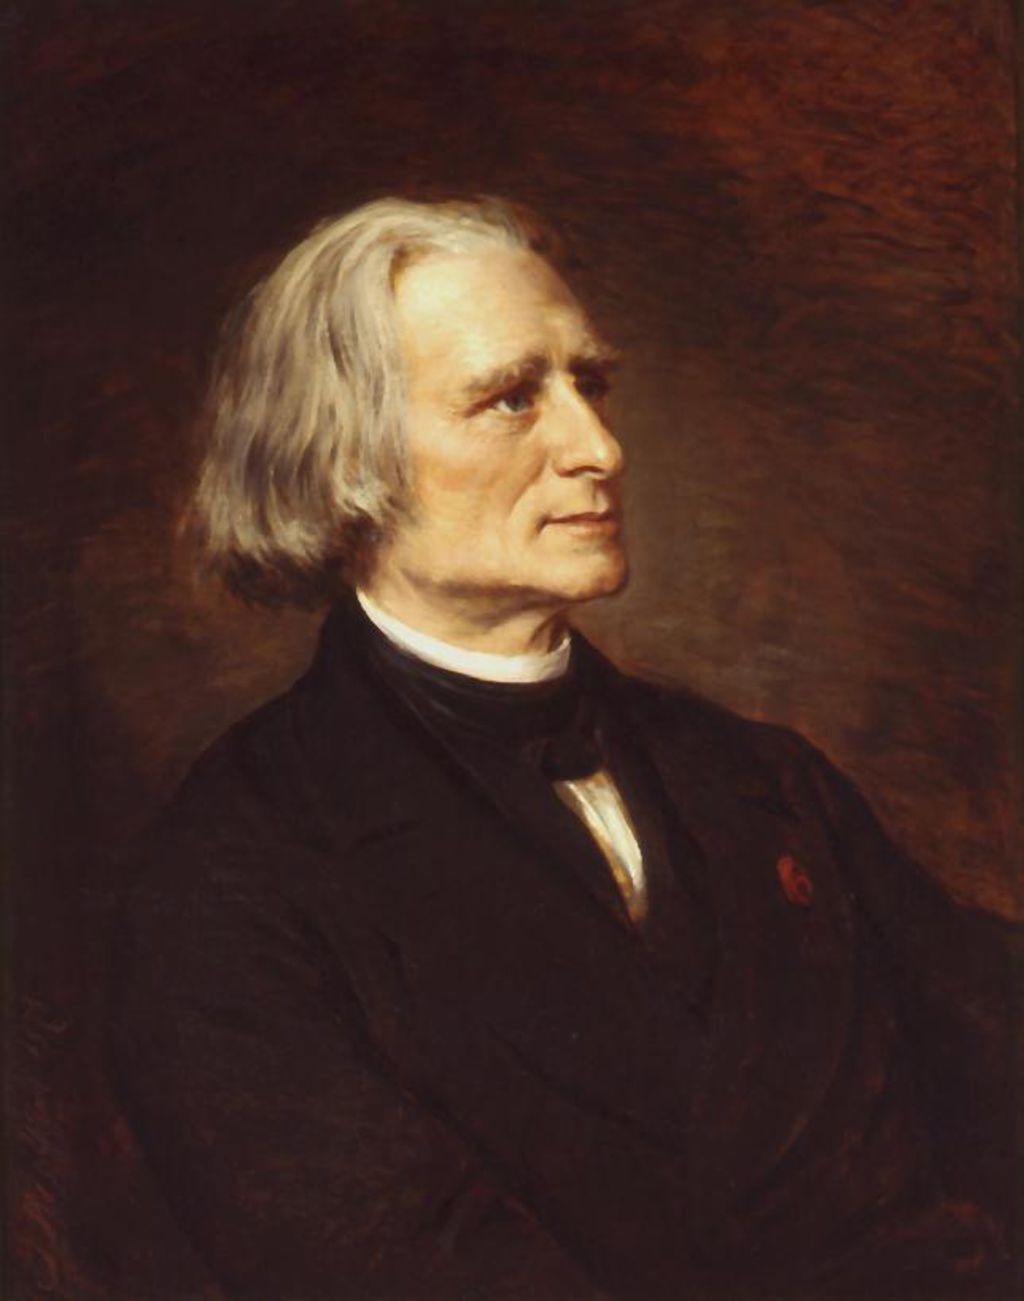 Gemälde: Franz Liszt, 1874